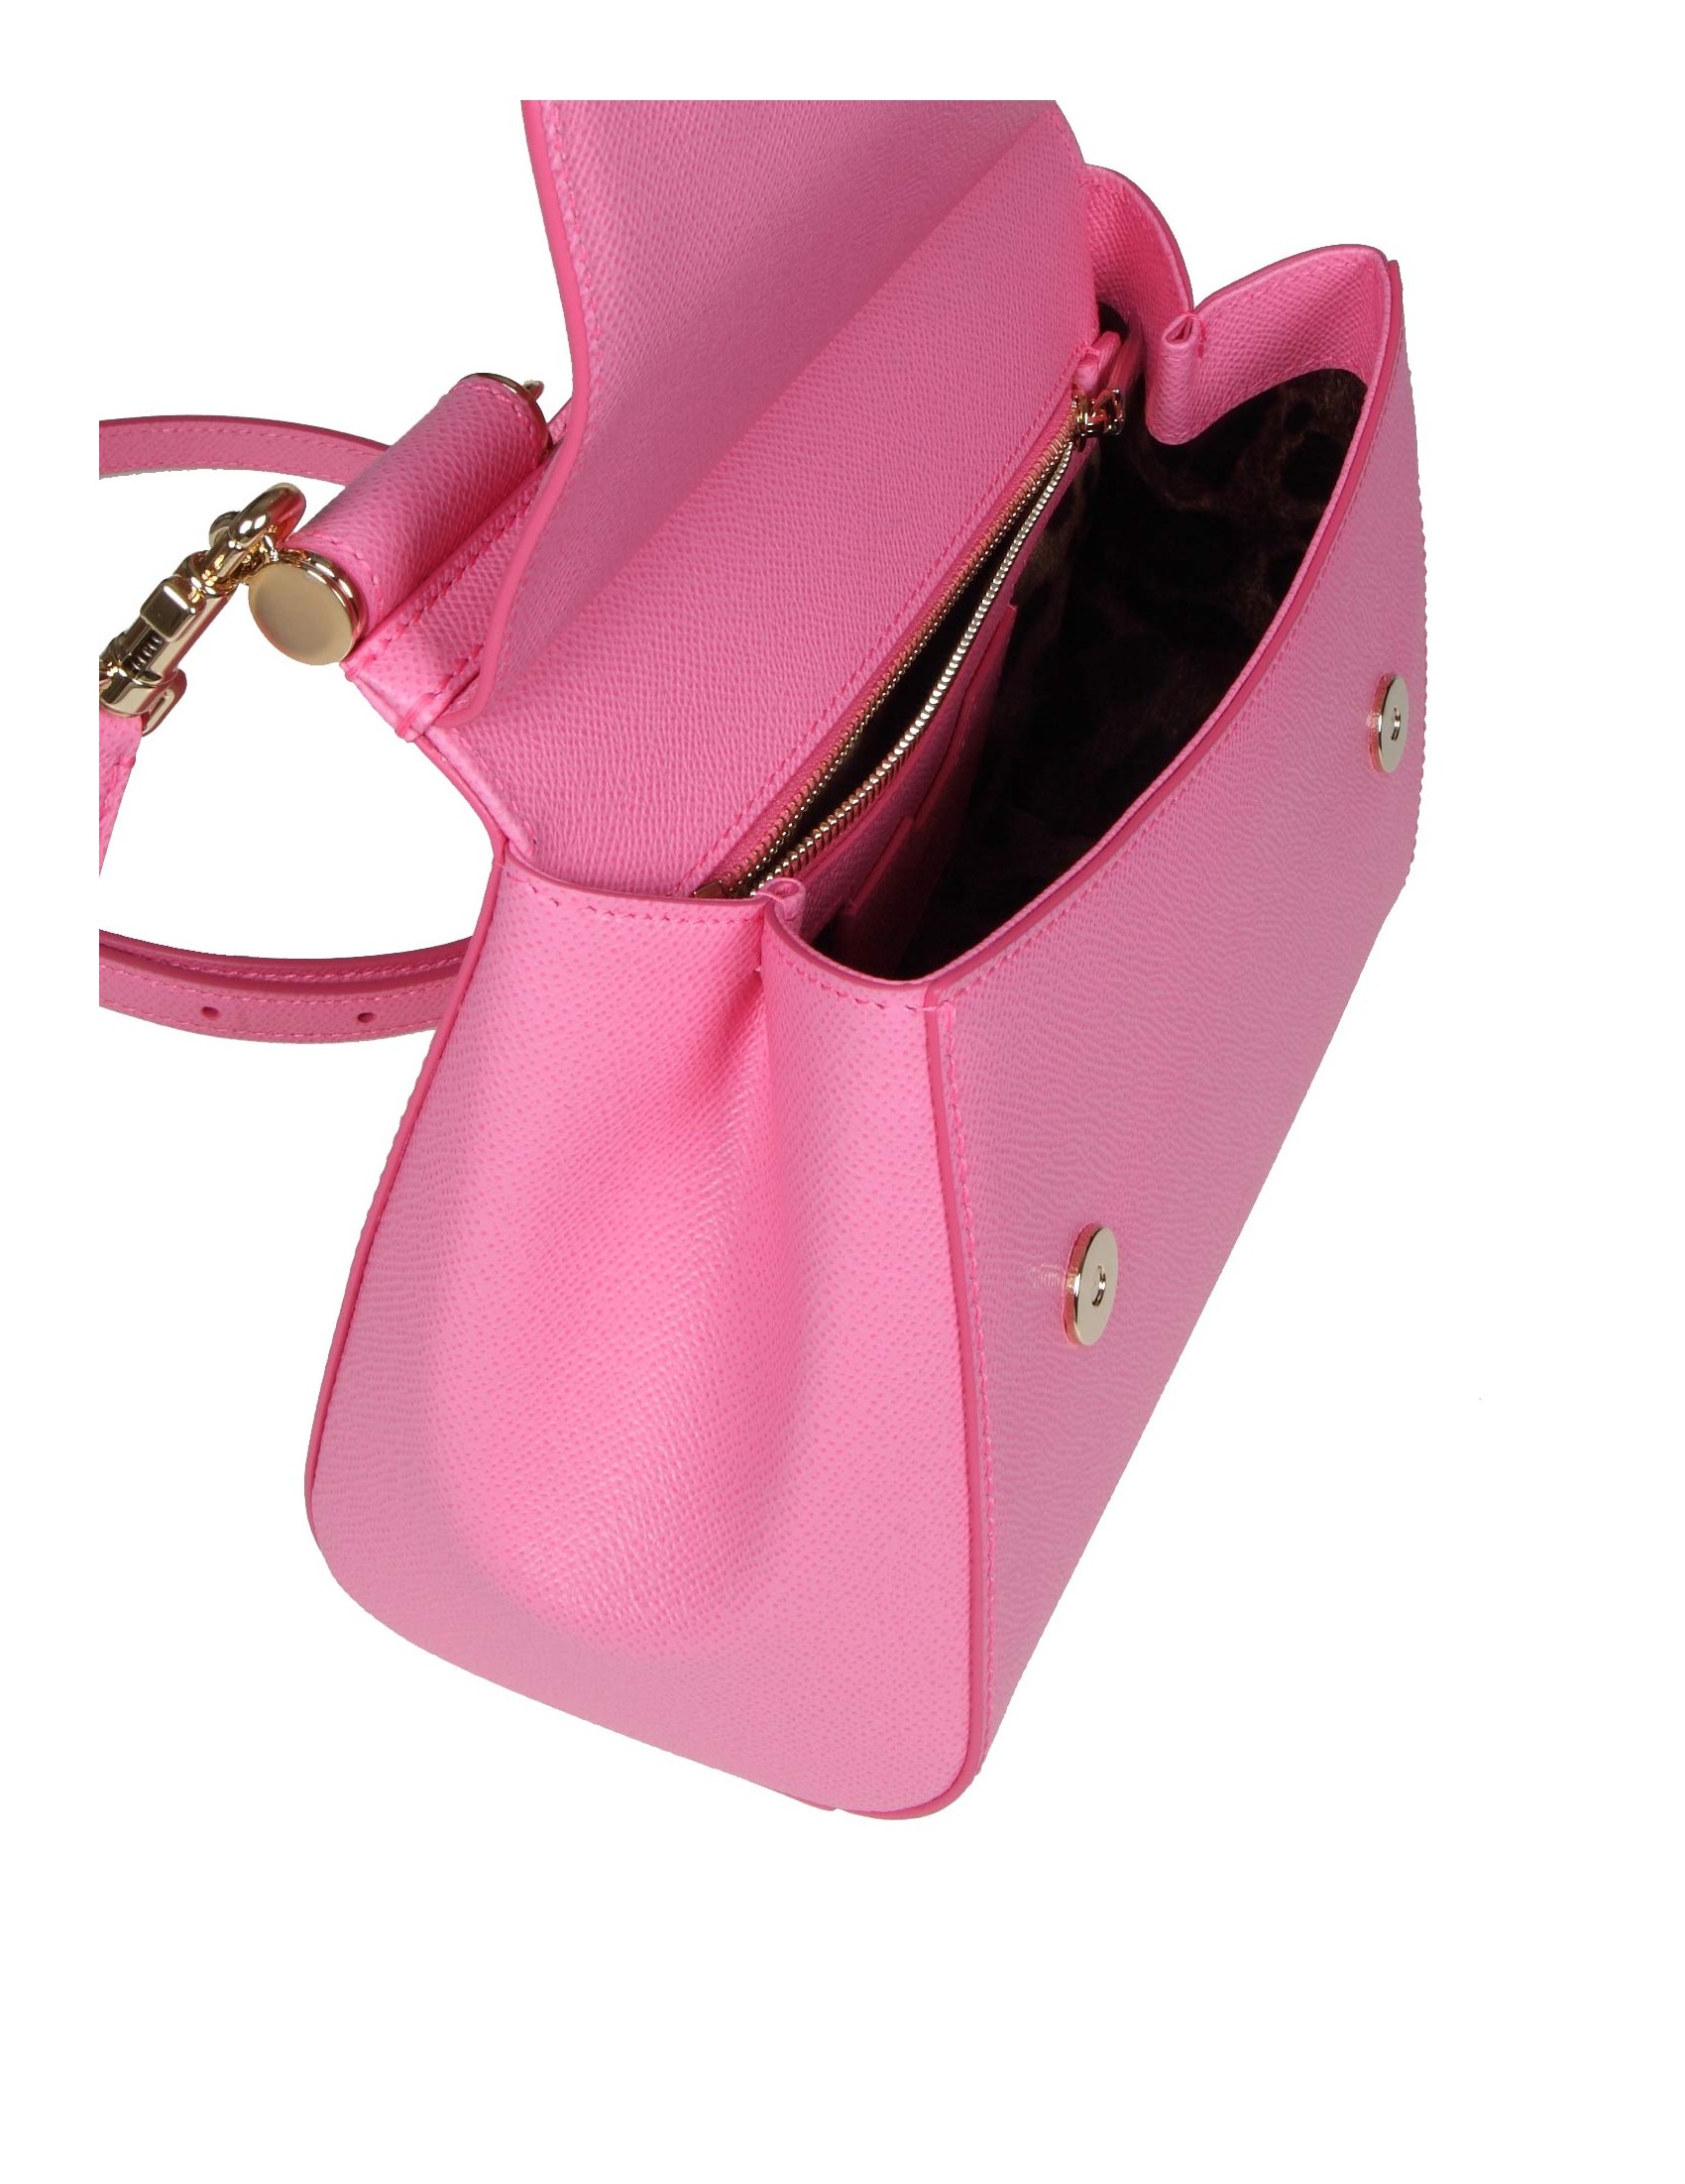 Dolce & gabbana medium sicily handbag